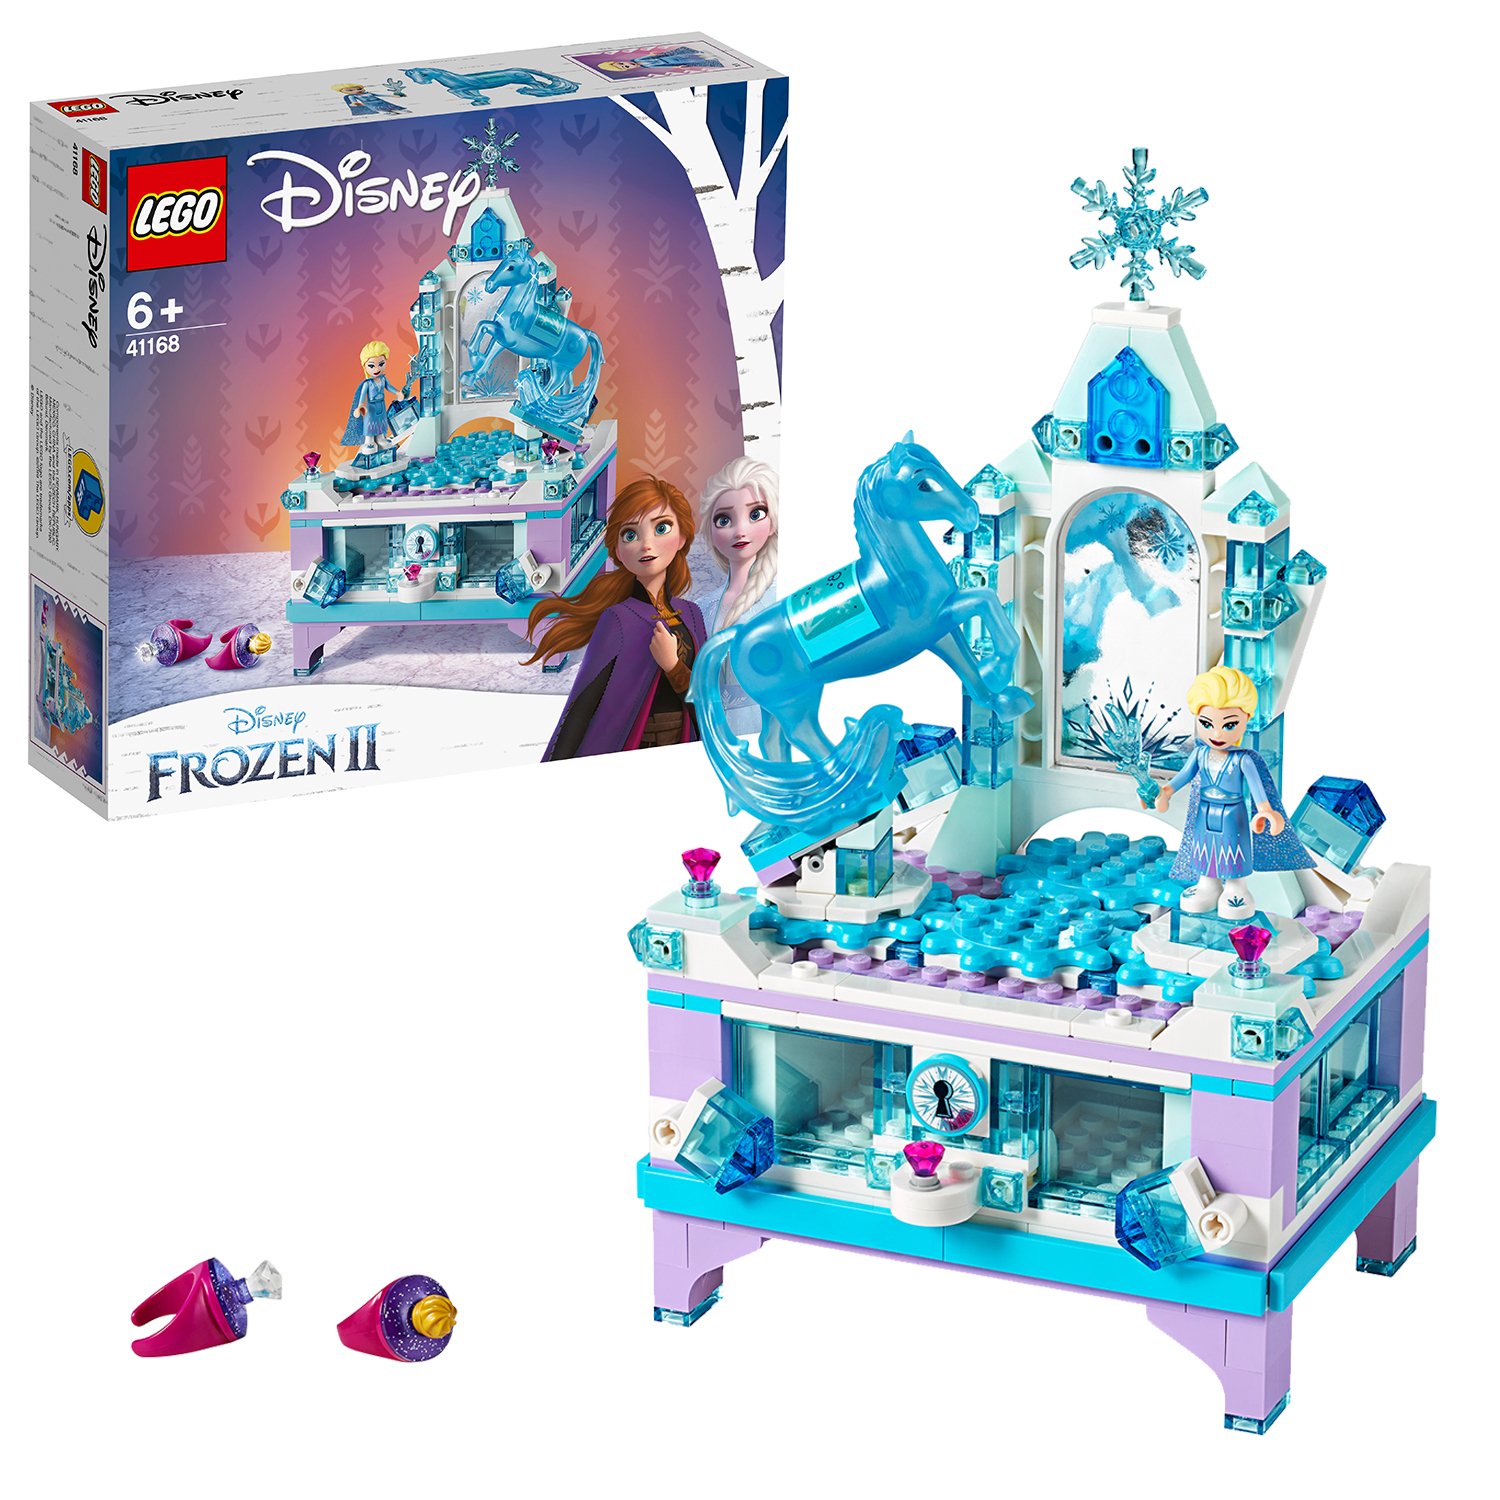 LEGO Disney Frozen II Elsa's Jewelry Box Creation Set -41168